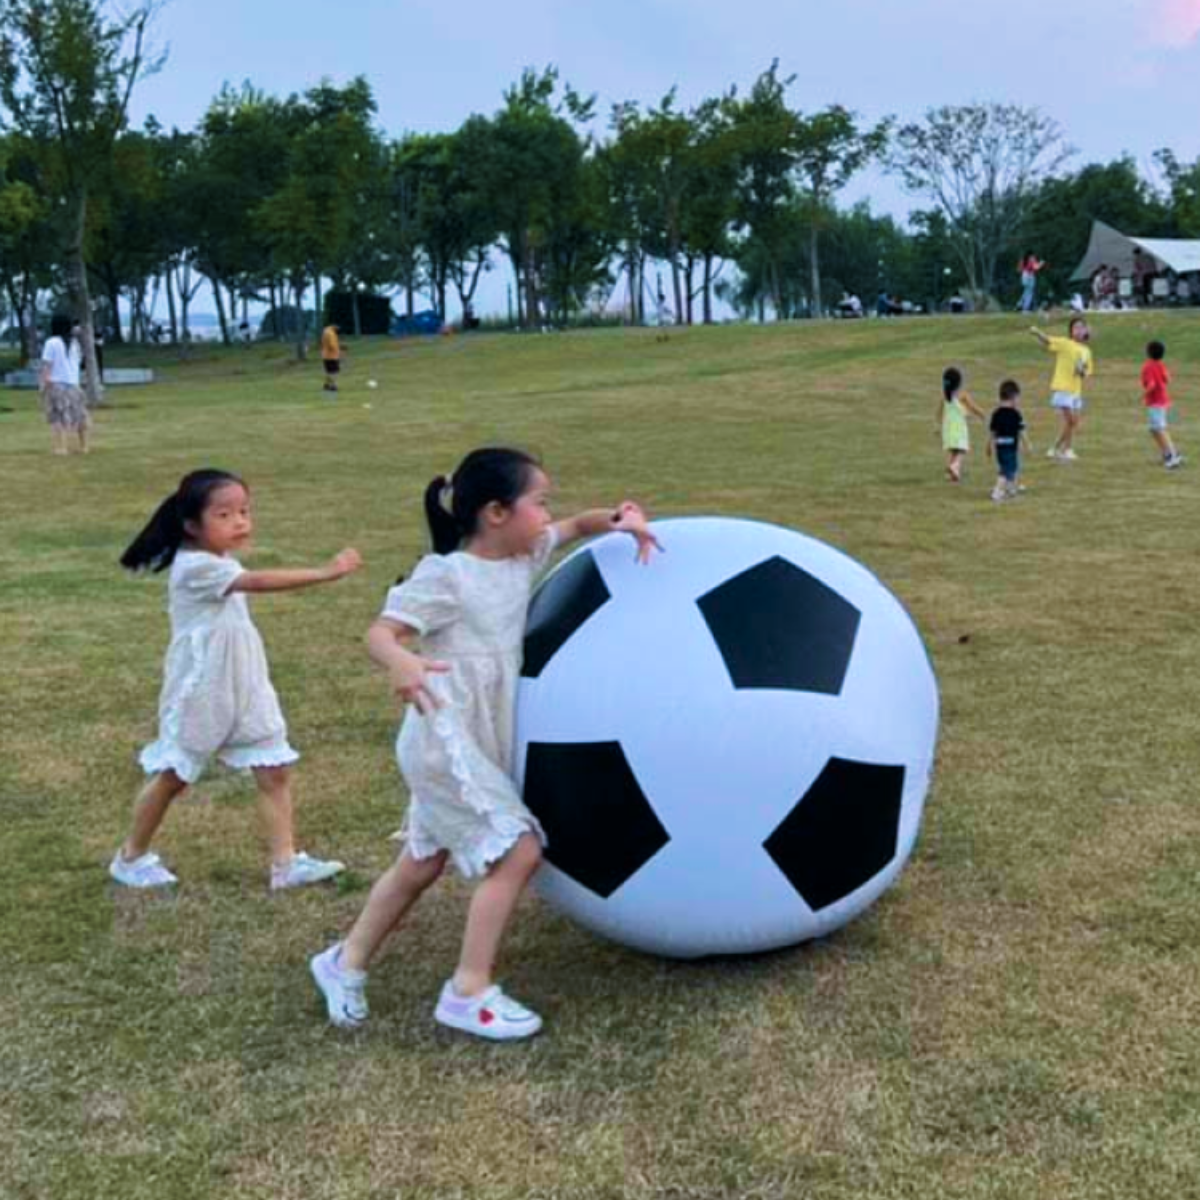 『親子で遊ぶ』サッカー形巨大風船80cm｜少し前に話題になった割れない風船！庭でもOK、もっと広い広場なんかで遊んだらかなり楽しい！